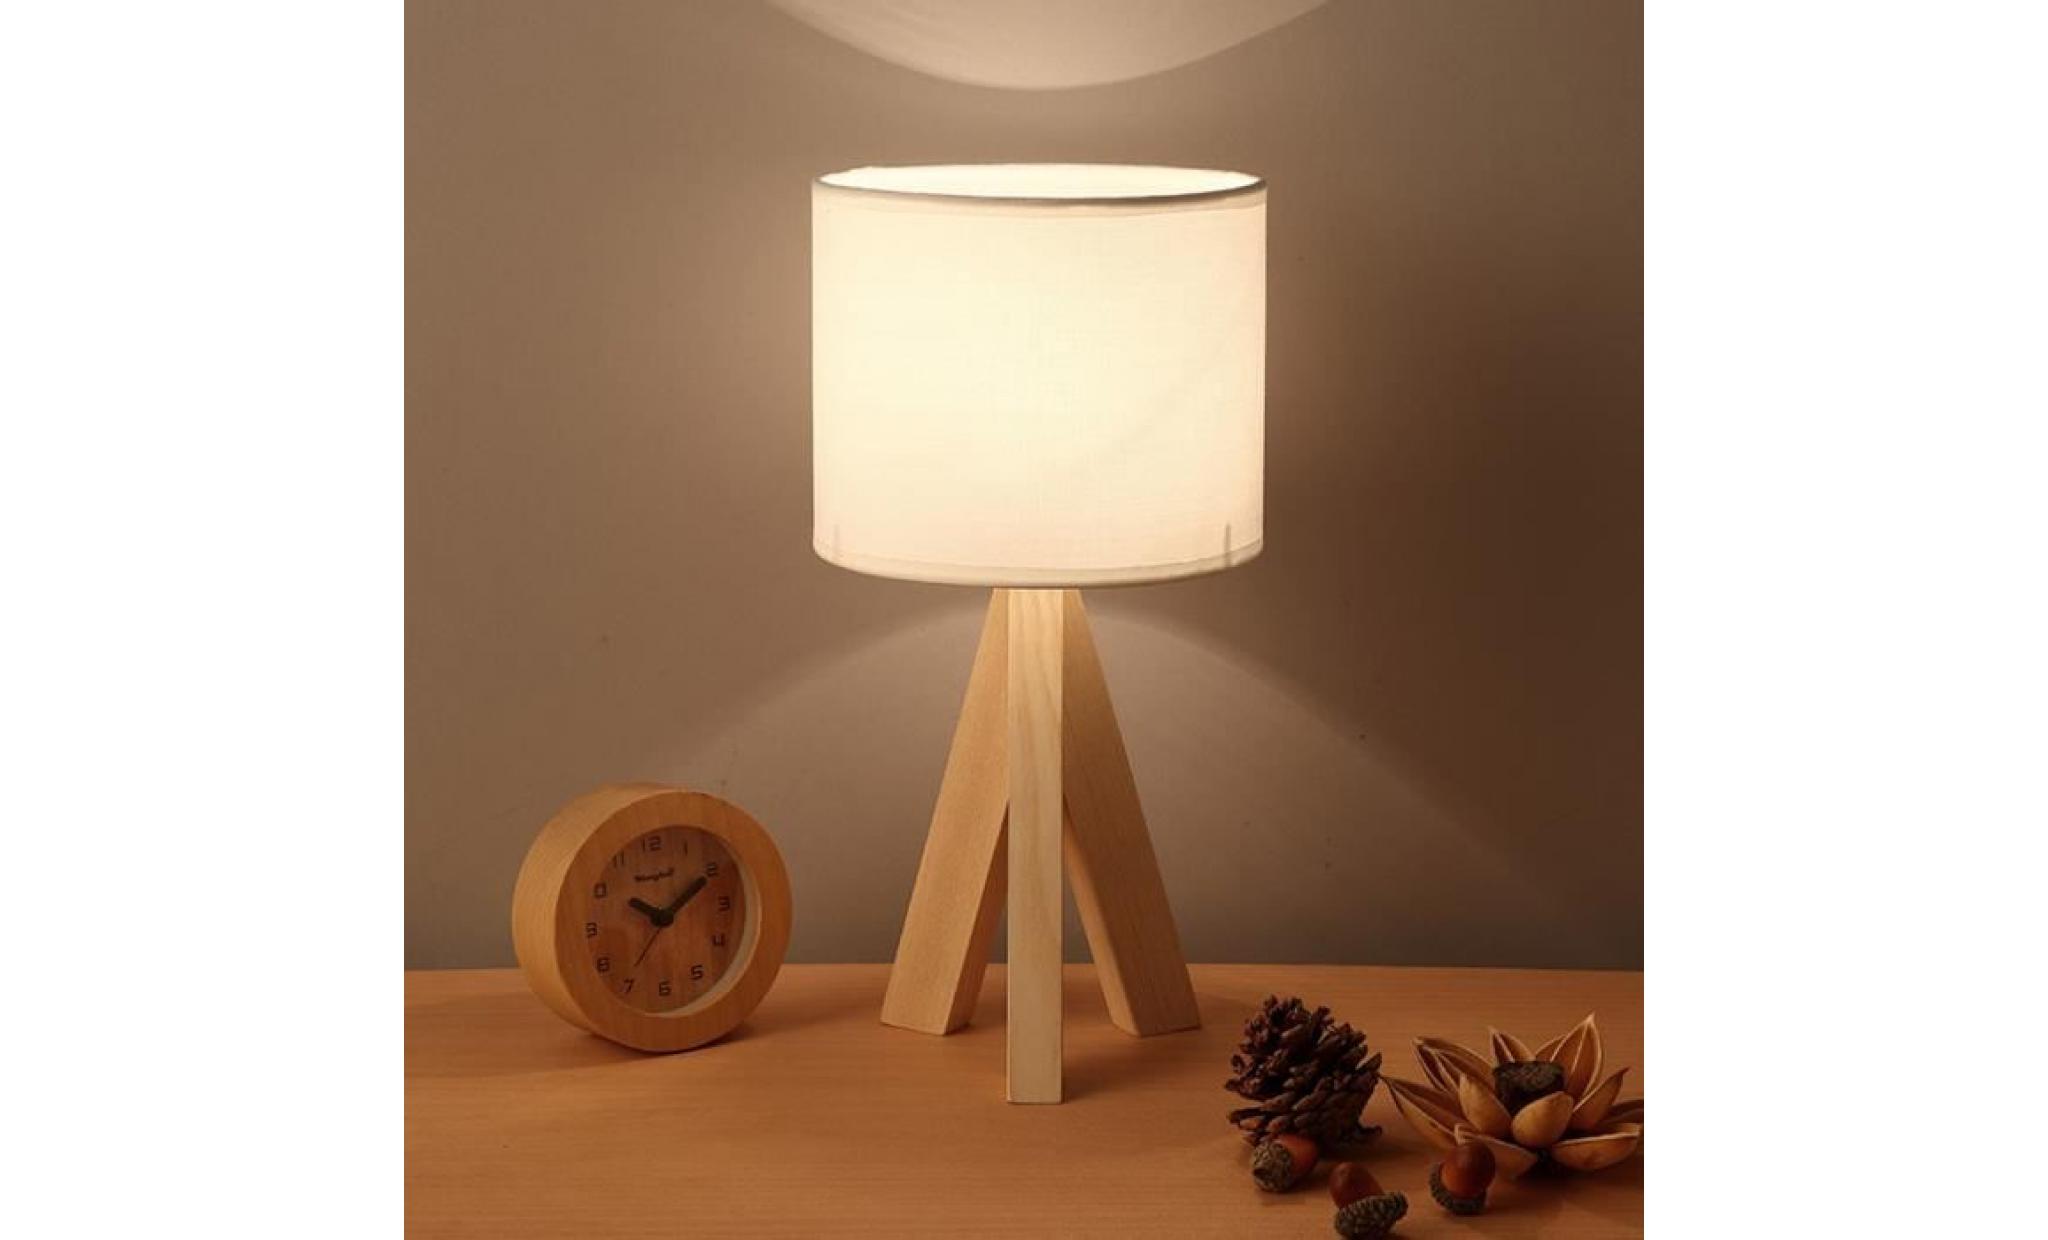 lampe à poser naturel bois trépied e27 h 23 cm x Ø18 cm abat jour tissu lampe de chevet table lampe salon chambre style minimaliste